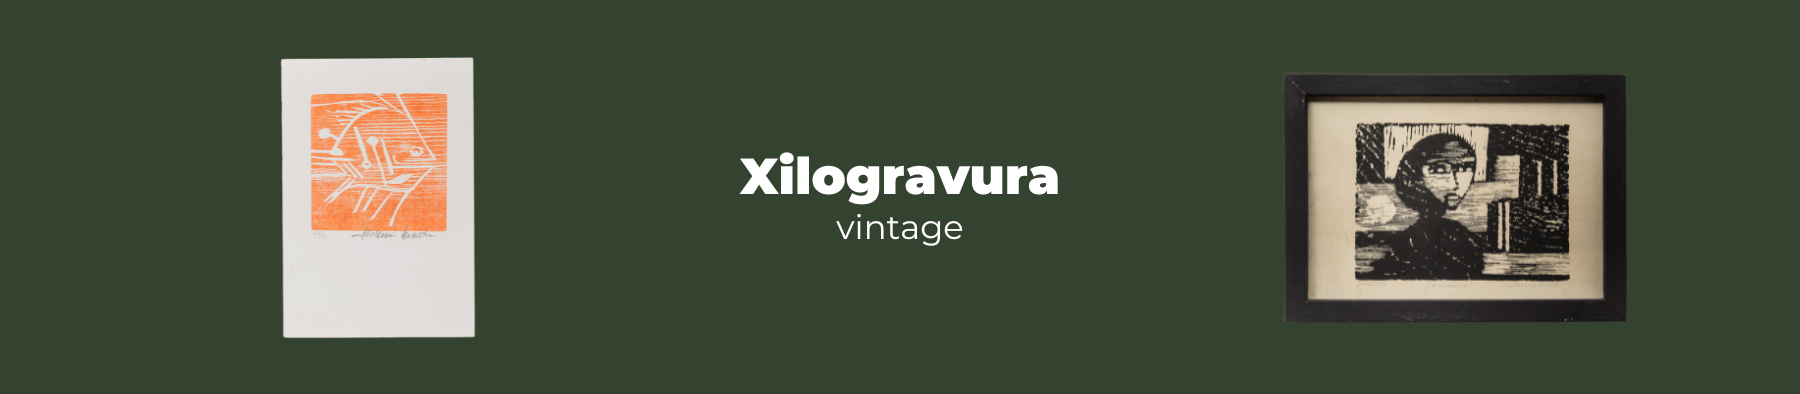 Xilogravura Vintage